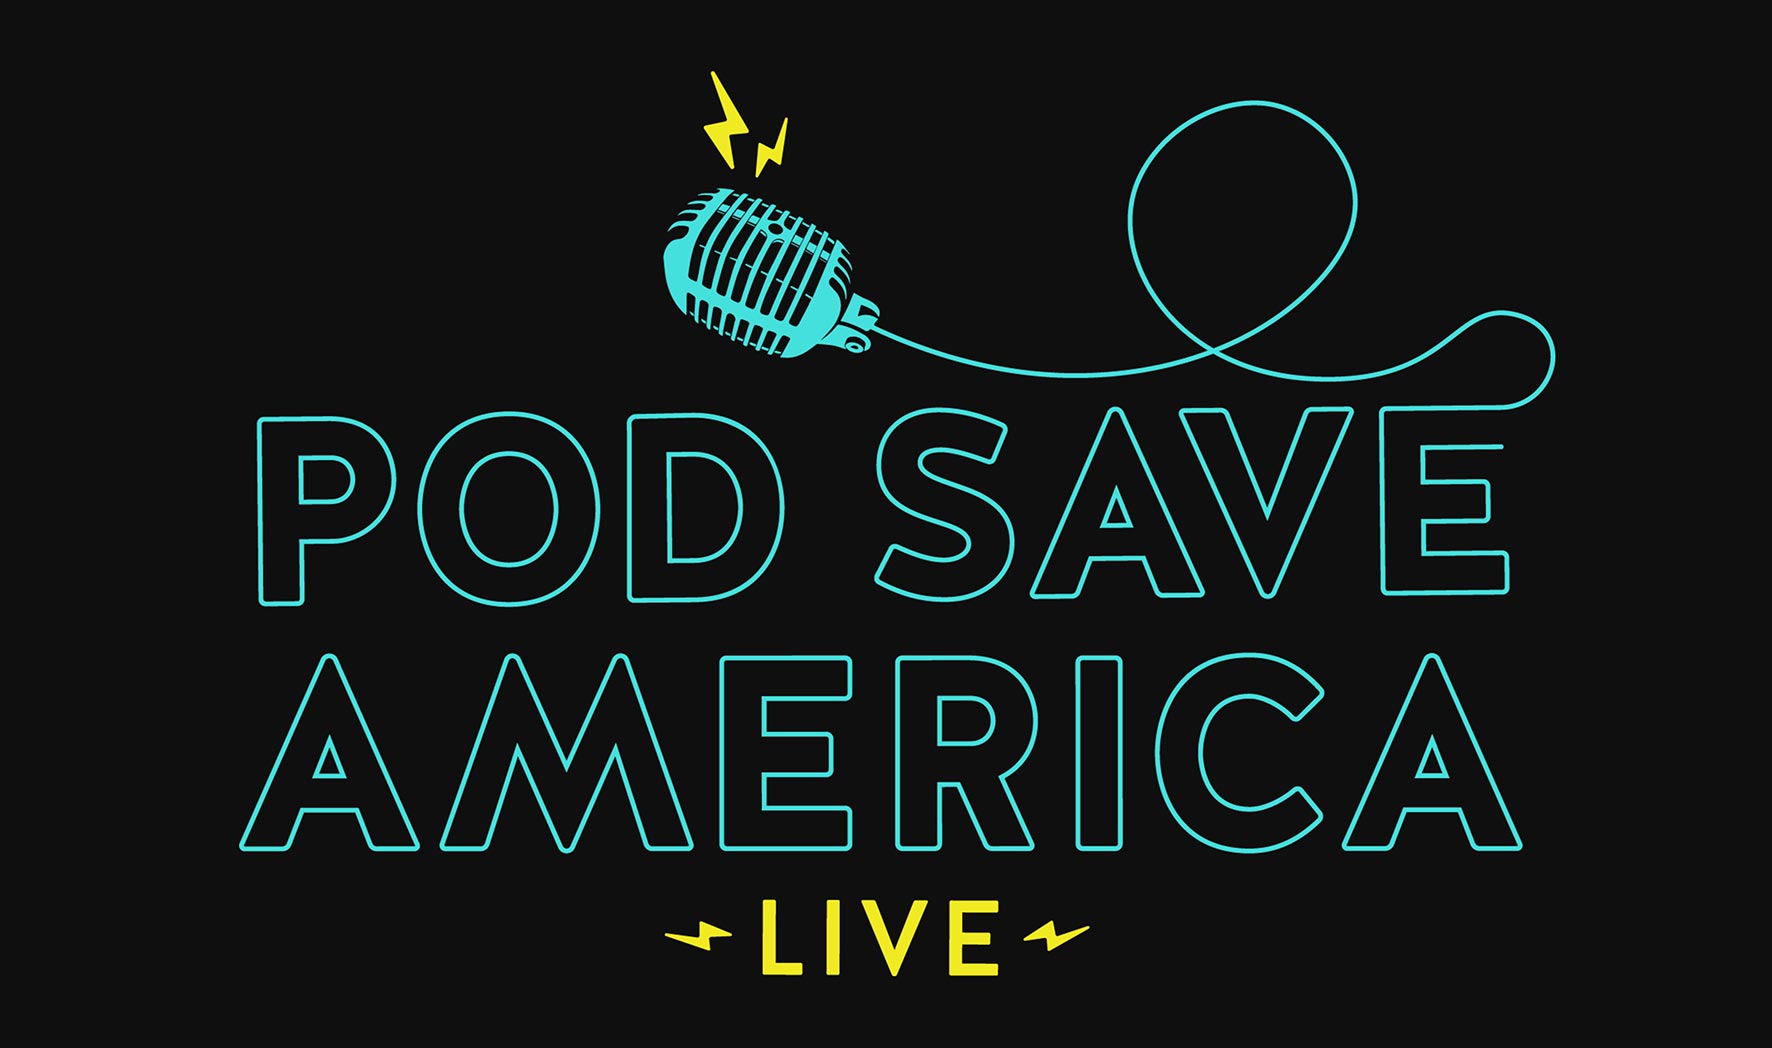 Pod Save America: Live - CANCELED